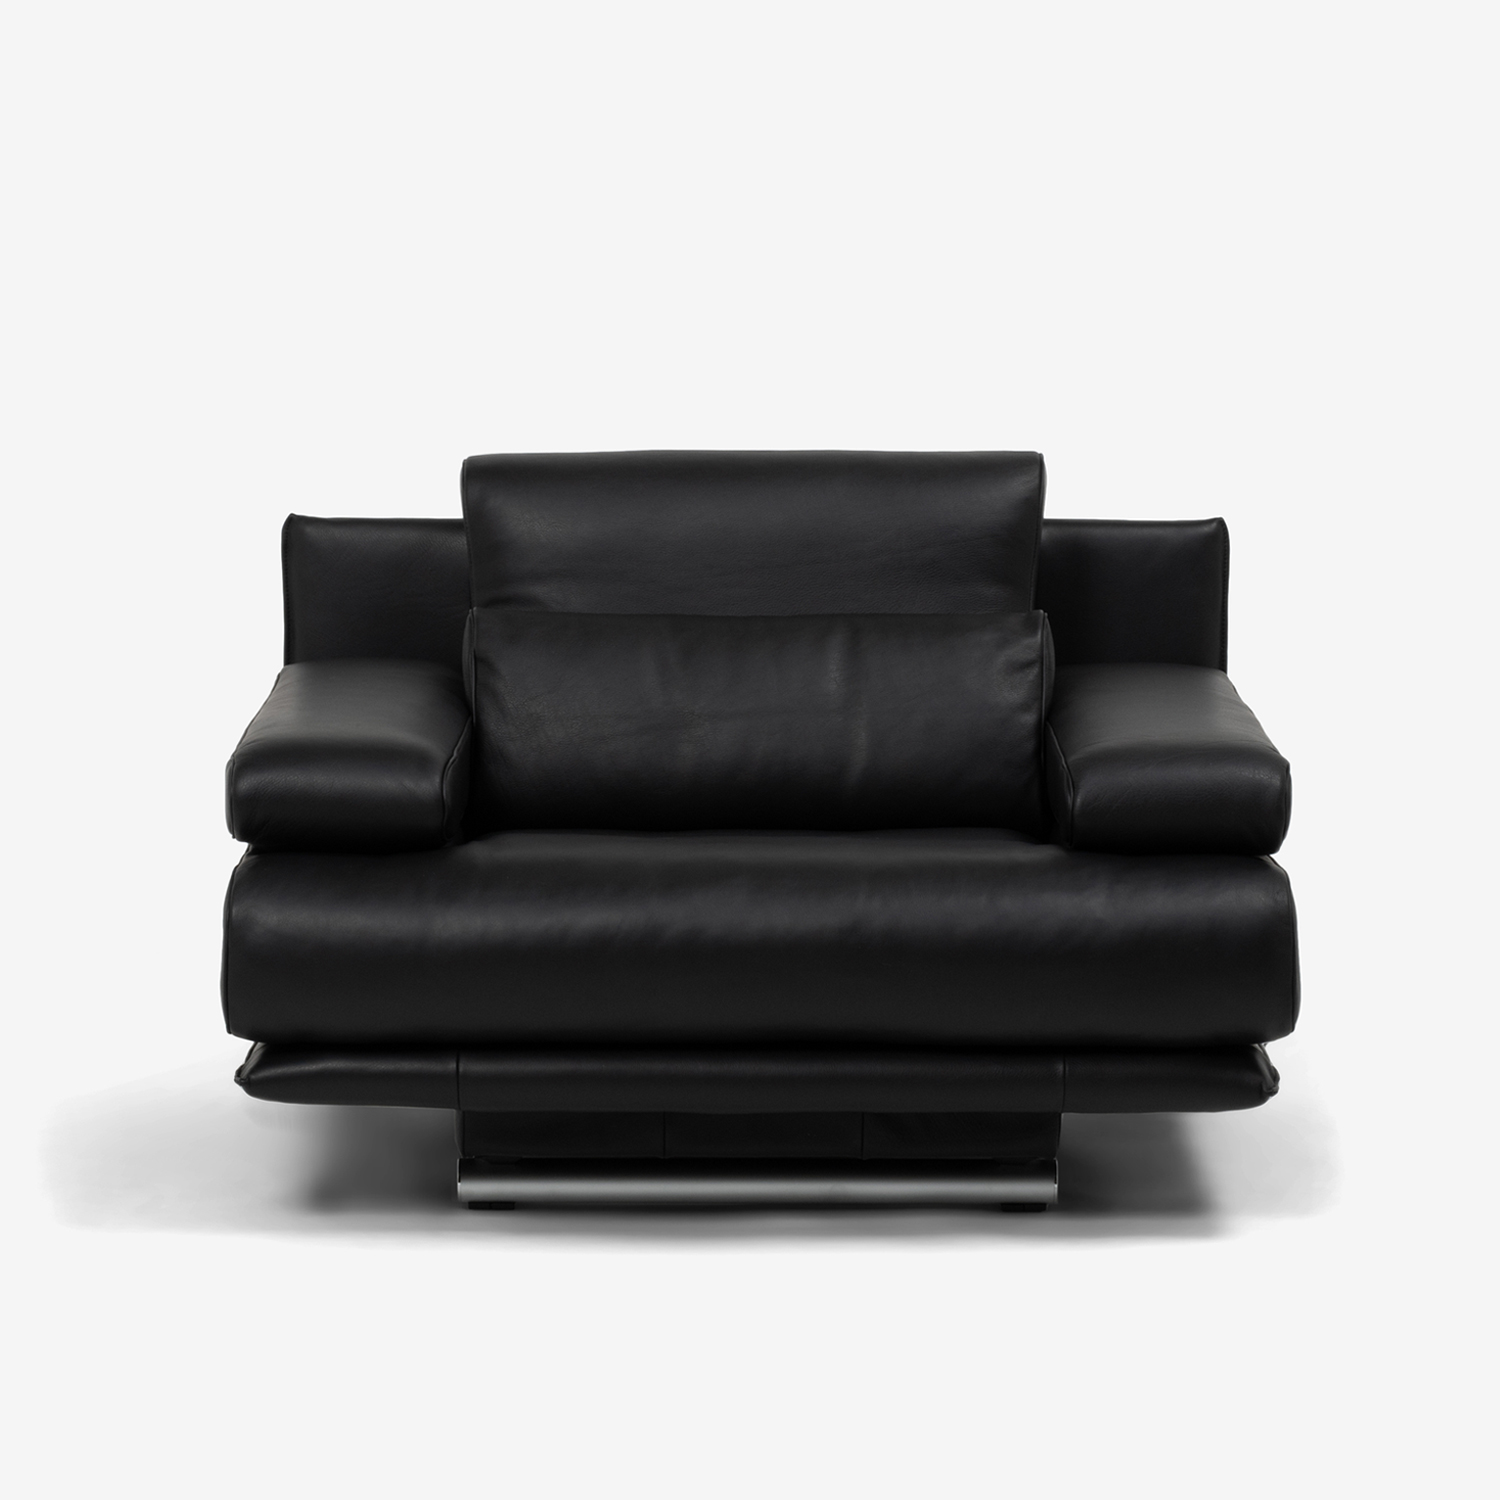 ROLF BENZ（ロルフベンツ）アームチェア 「6500」 革ブラック色 | 大塚家具 オンラインショップ